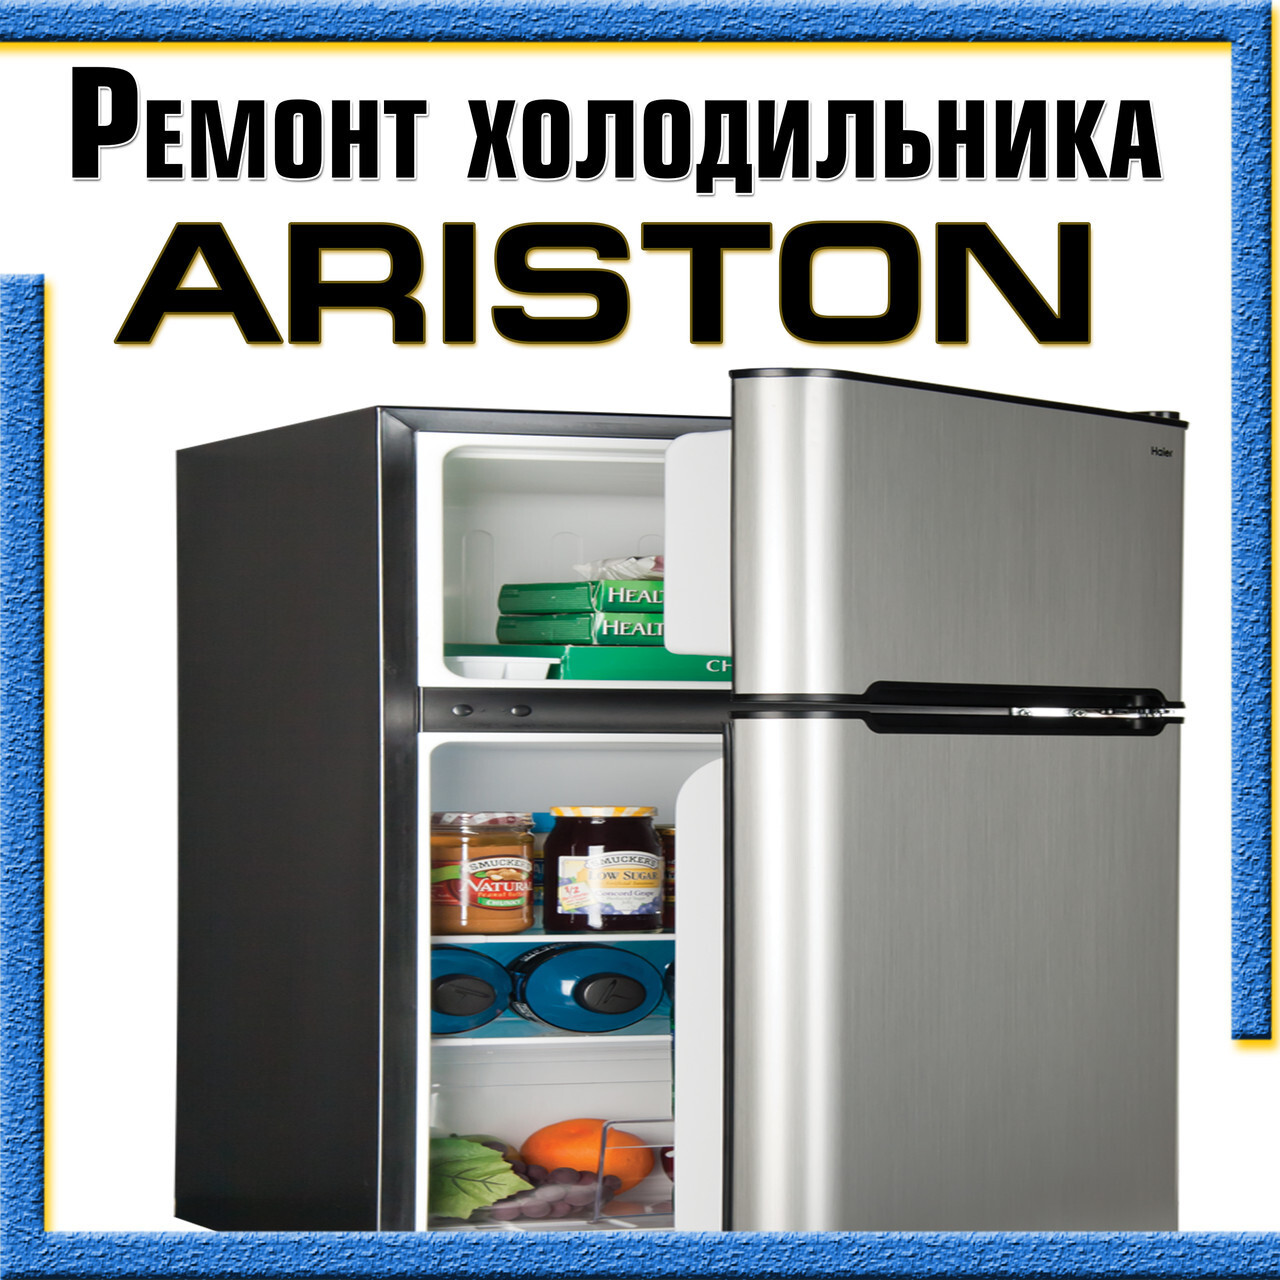 Ремонт холодильников Ariston на дому